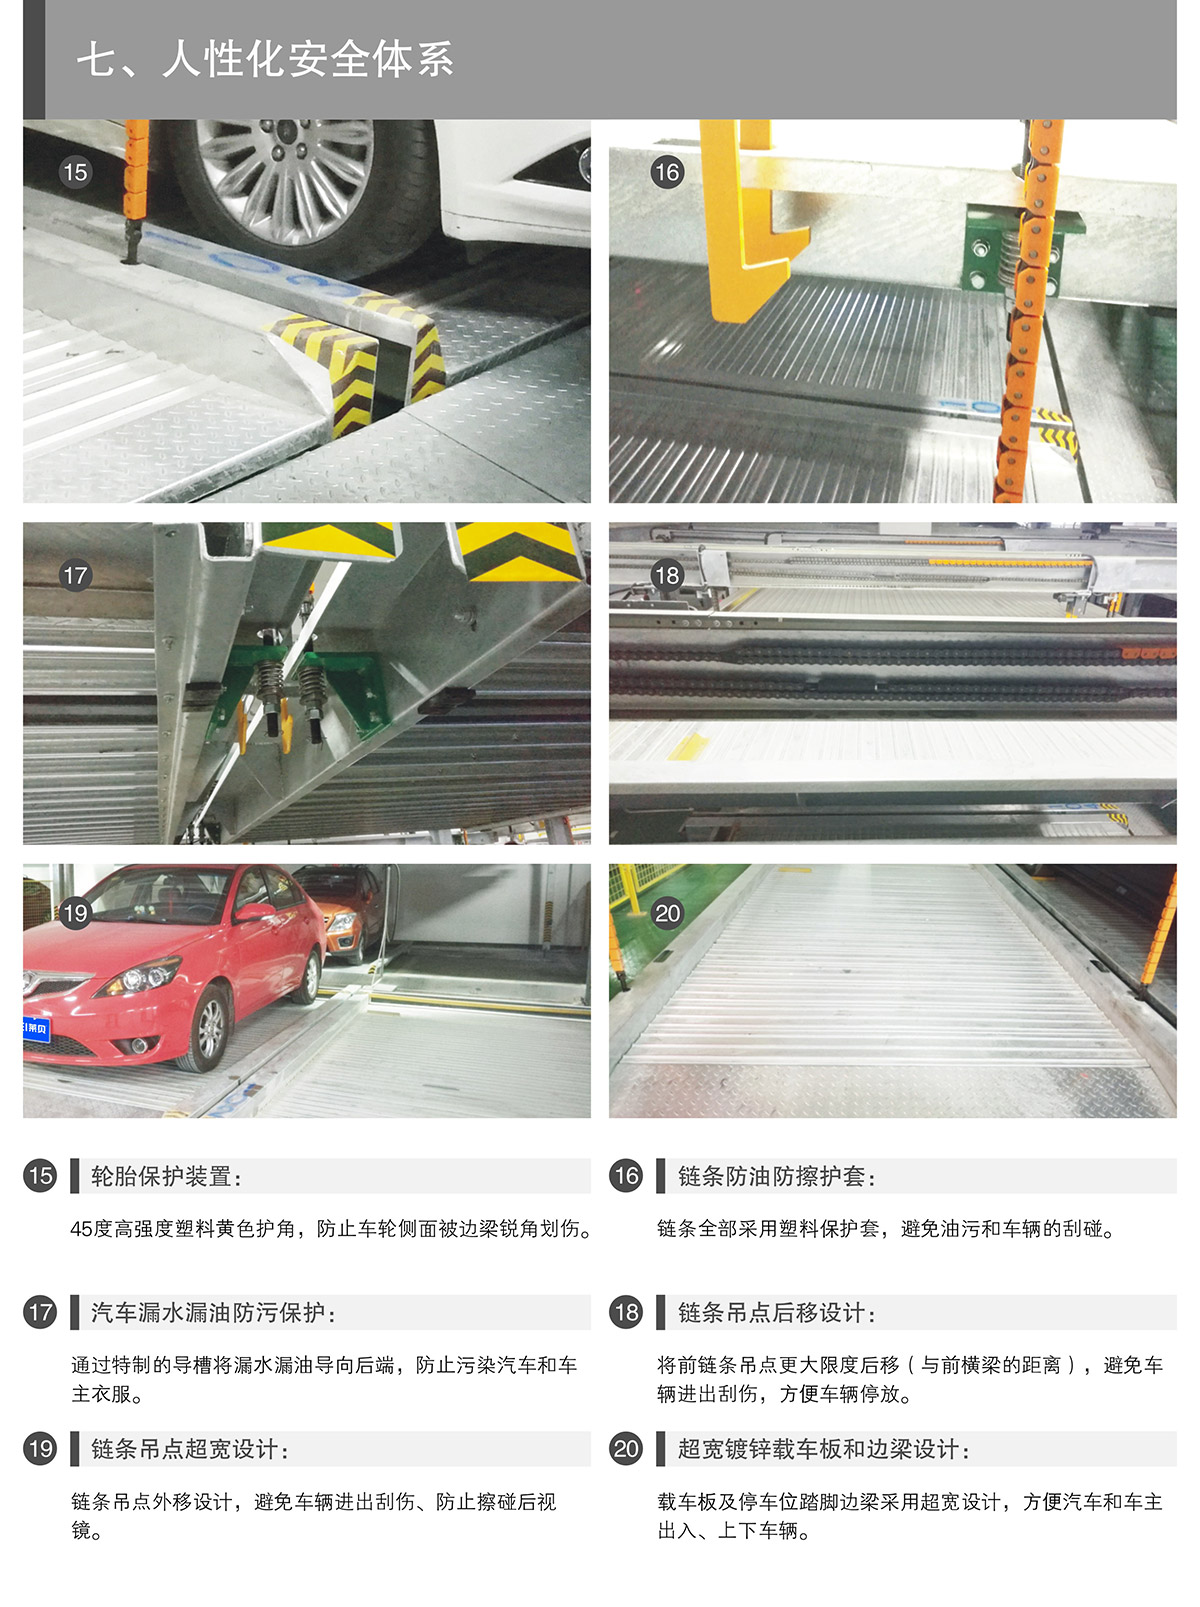 重庆PSH7七层升降横移类机械式立体停车设备人性化安全体系.jpg